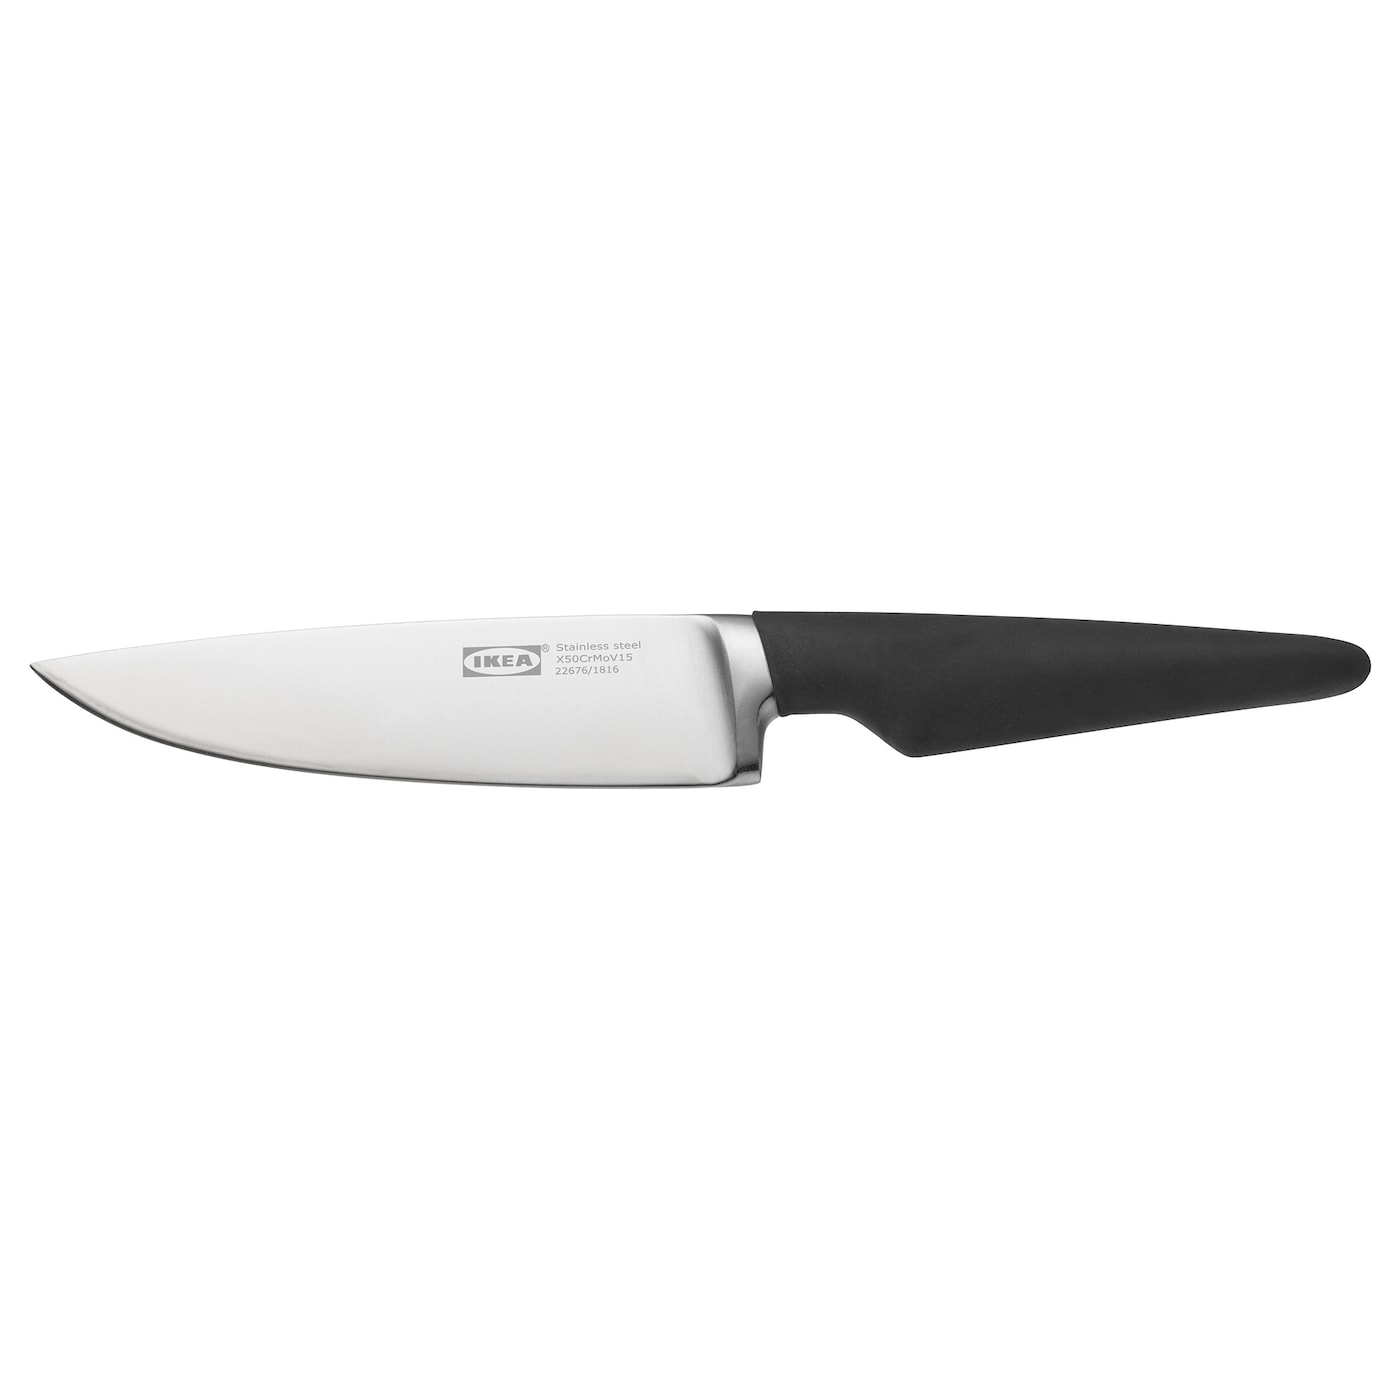 VÖRDA ВЁРДА Нож универсальный, черный, 14 см IKEA